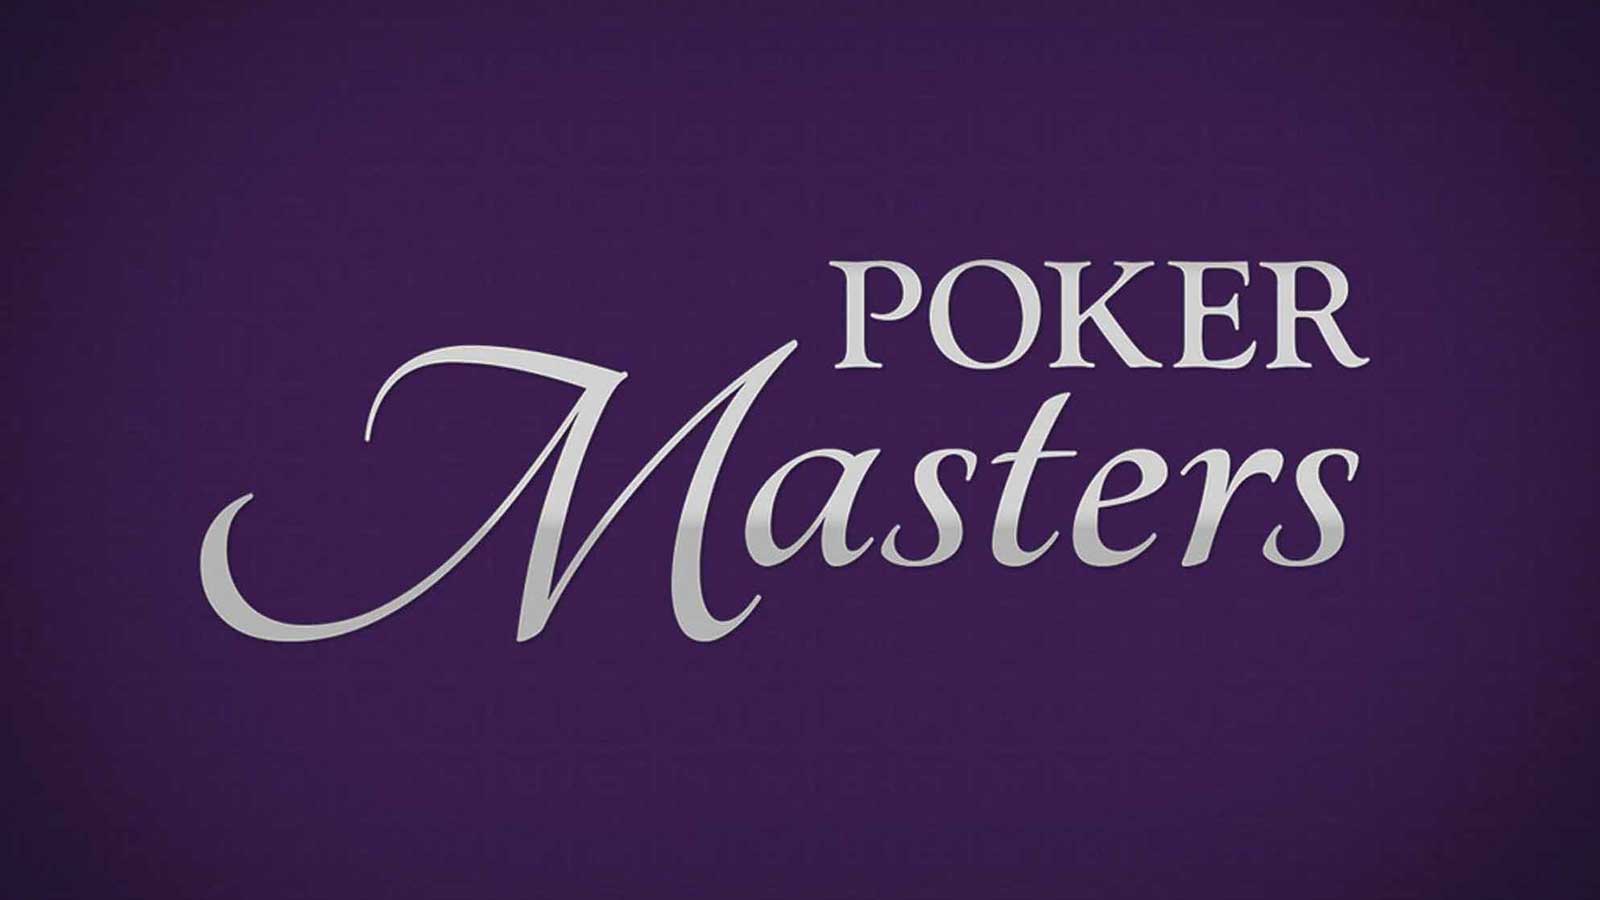 Poker Central Announces Poker Masters on PokerGO